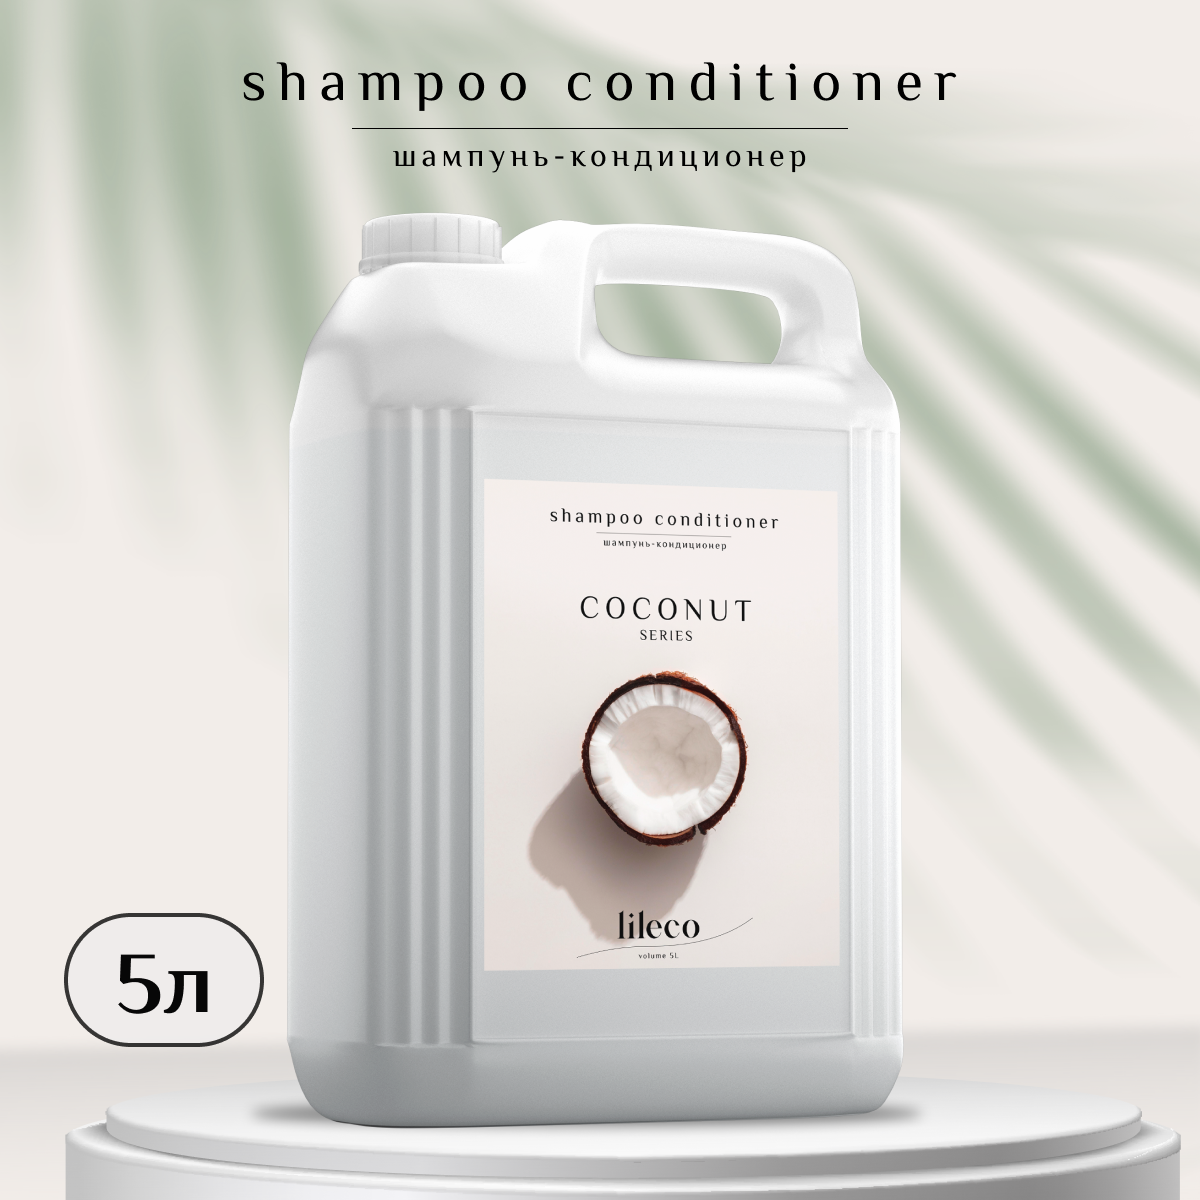 Шампунь для волос Lil Eco с ароматом кокоса 5л